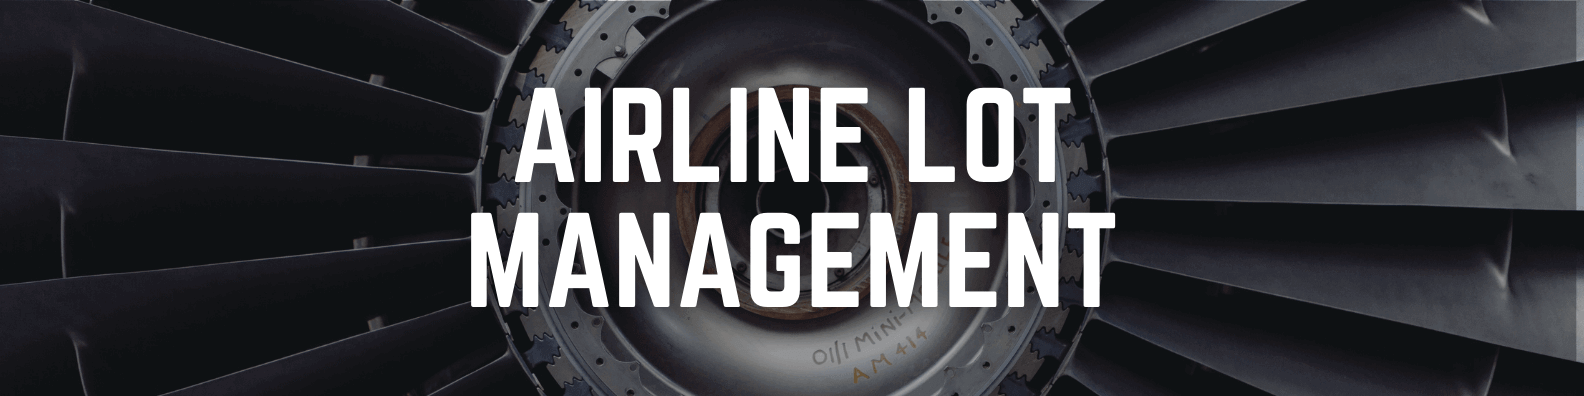 Airline Lot Management